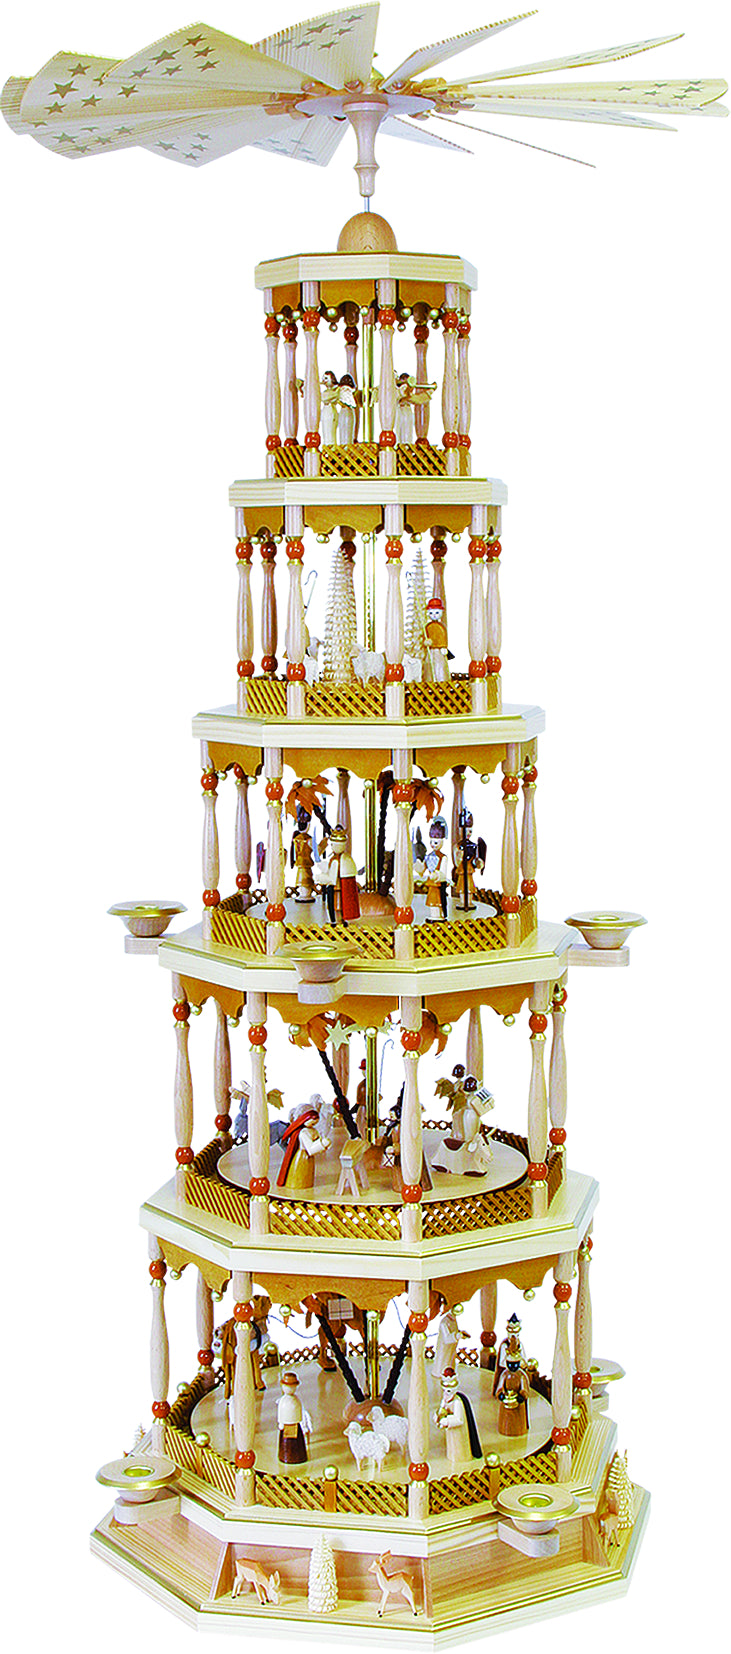 Glässer Art populaire 'Pyramide de la Nativité 5 étages avec mécanisme musical' 123cm